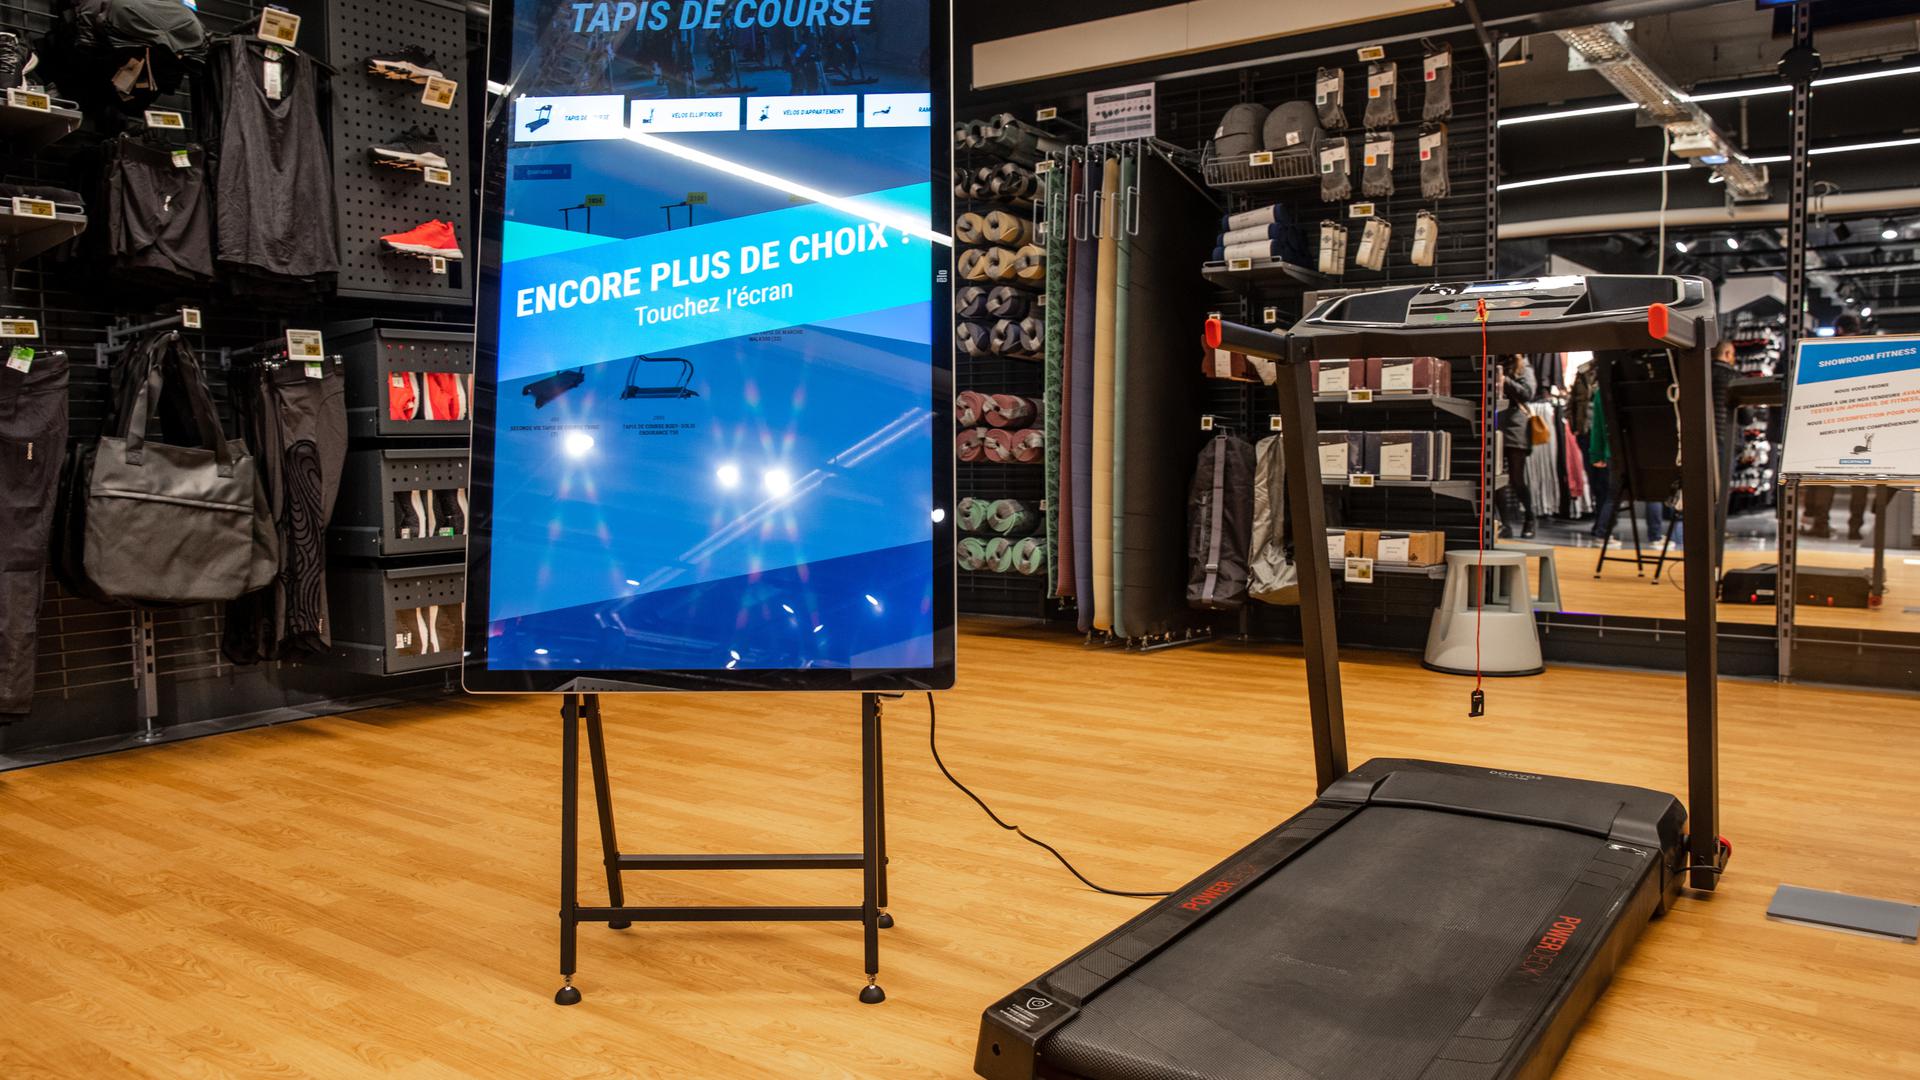 Dans le magasin, des écrans permettent aux clients d'accéder à l'intégralité des produits de la gamme, tout en bénéficiant des conseils des vendeurs présents sur place. 